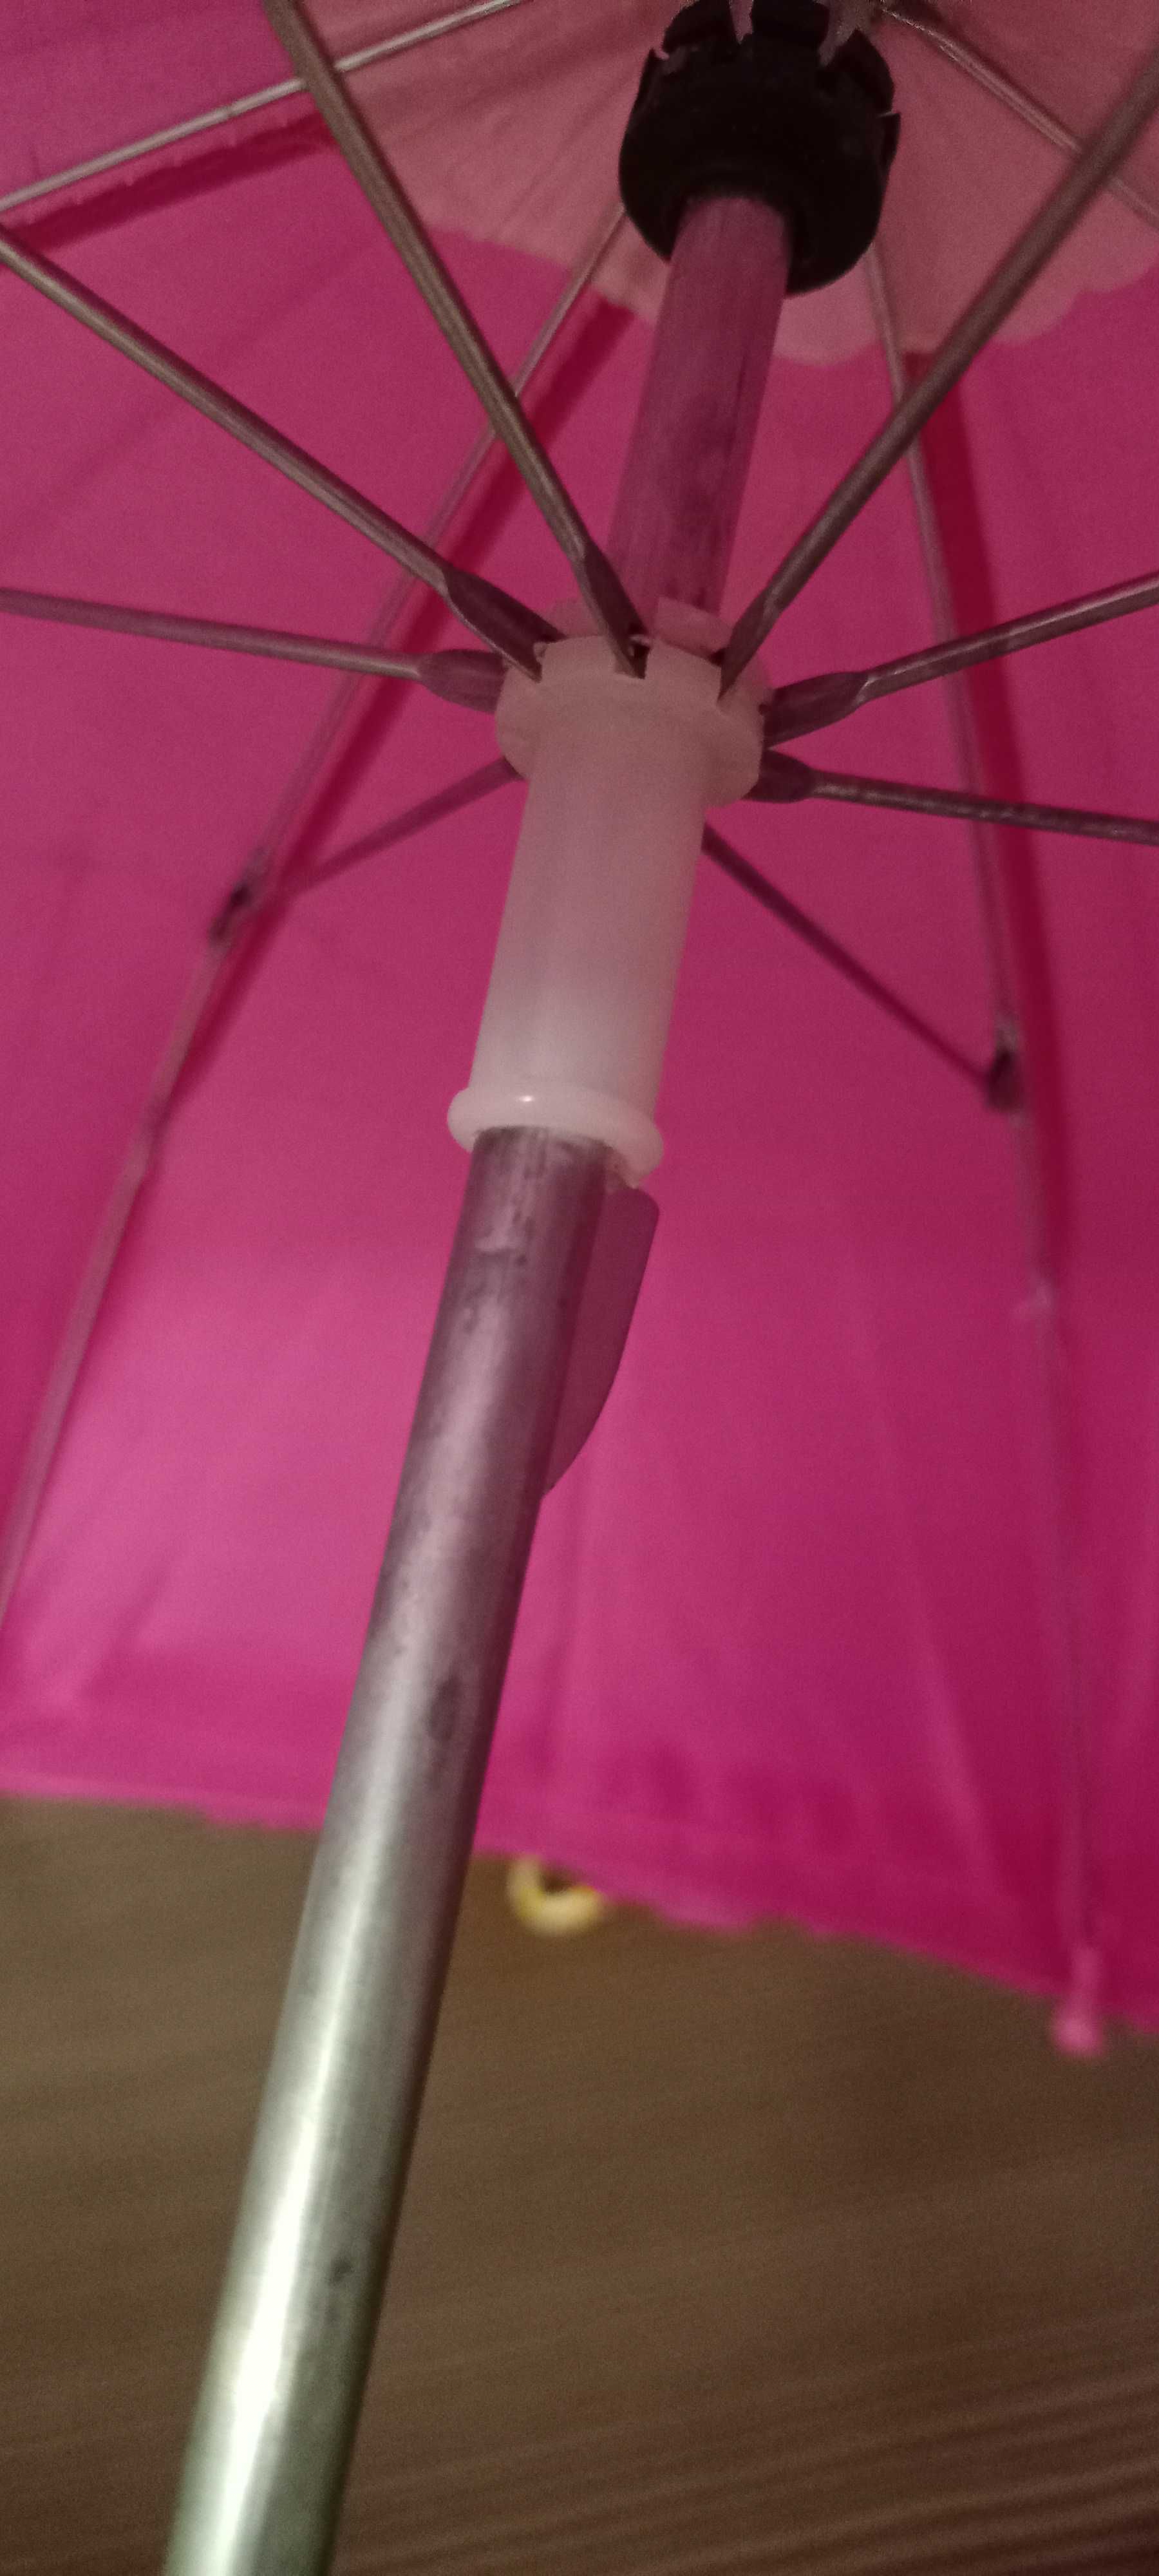 Зонтик детский розовый